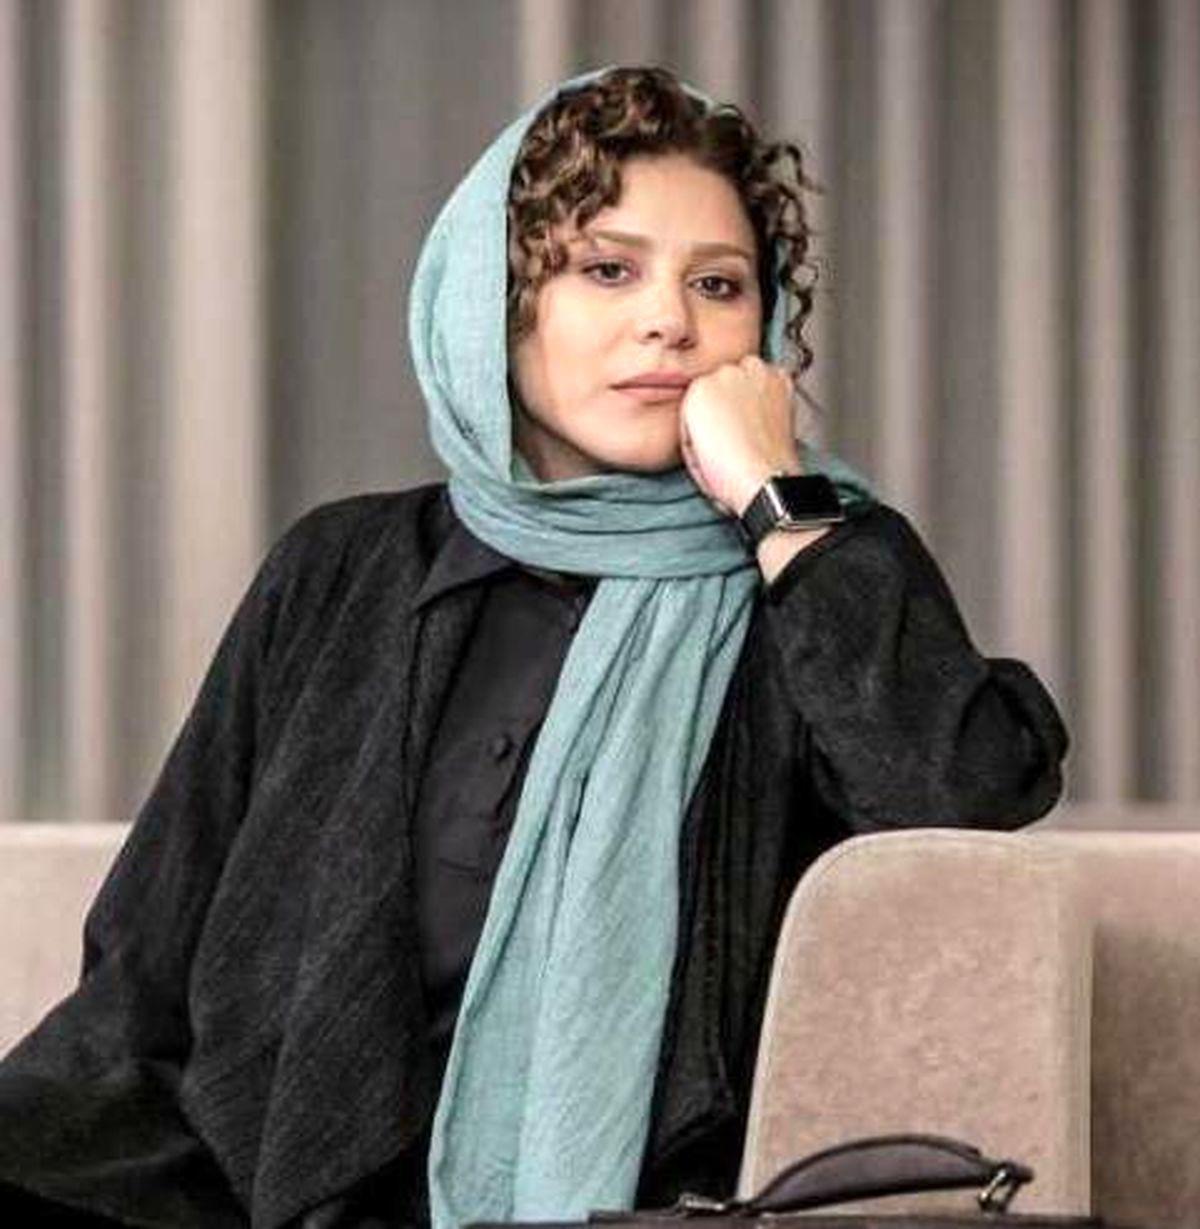 سحر دولتشاهی خانم جلسه ای از آب دراومد ! + فیلم آواز خوندن خانوم که سانسور شد